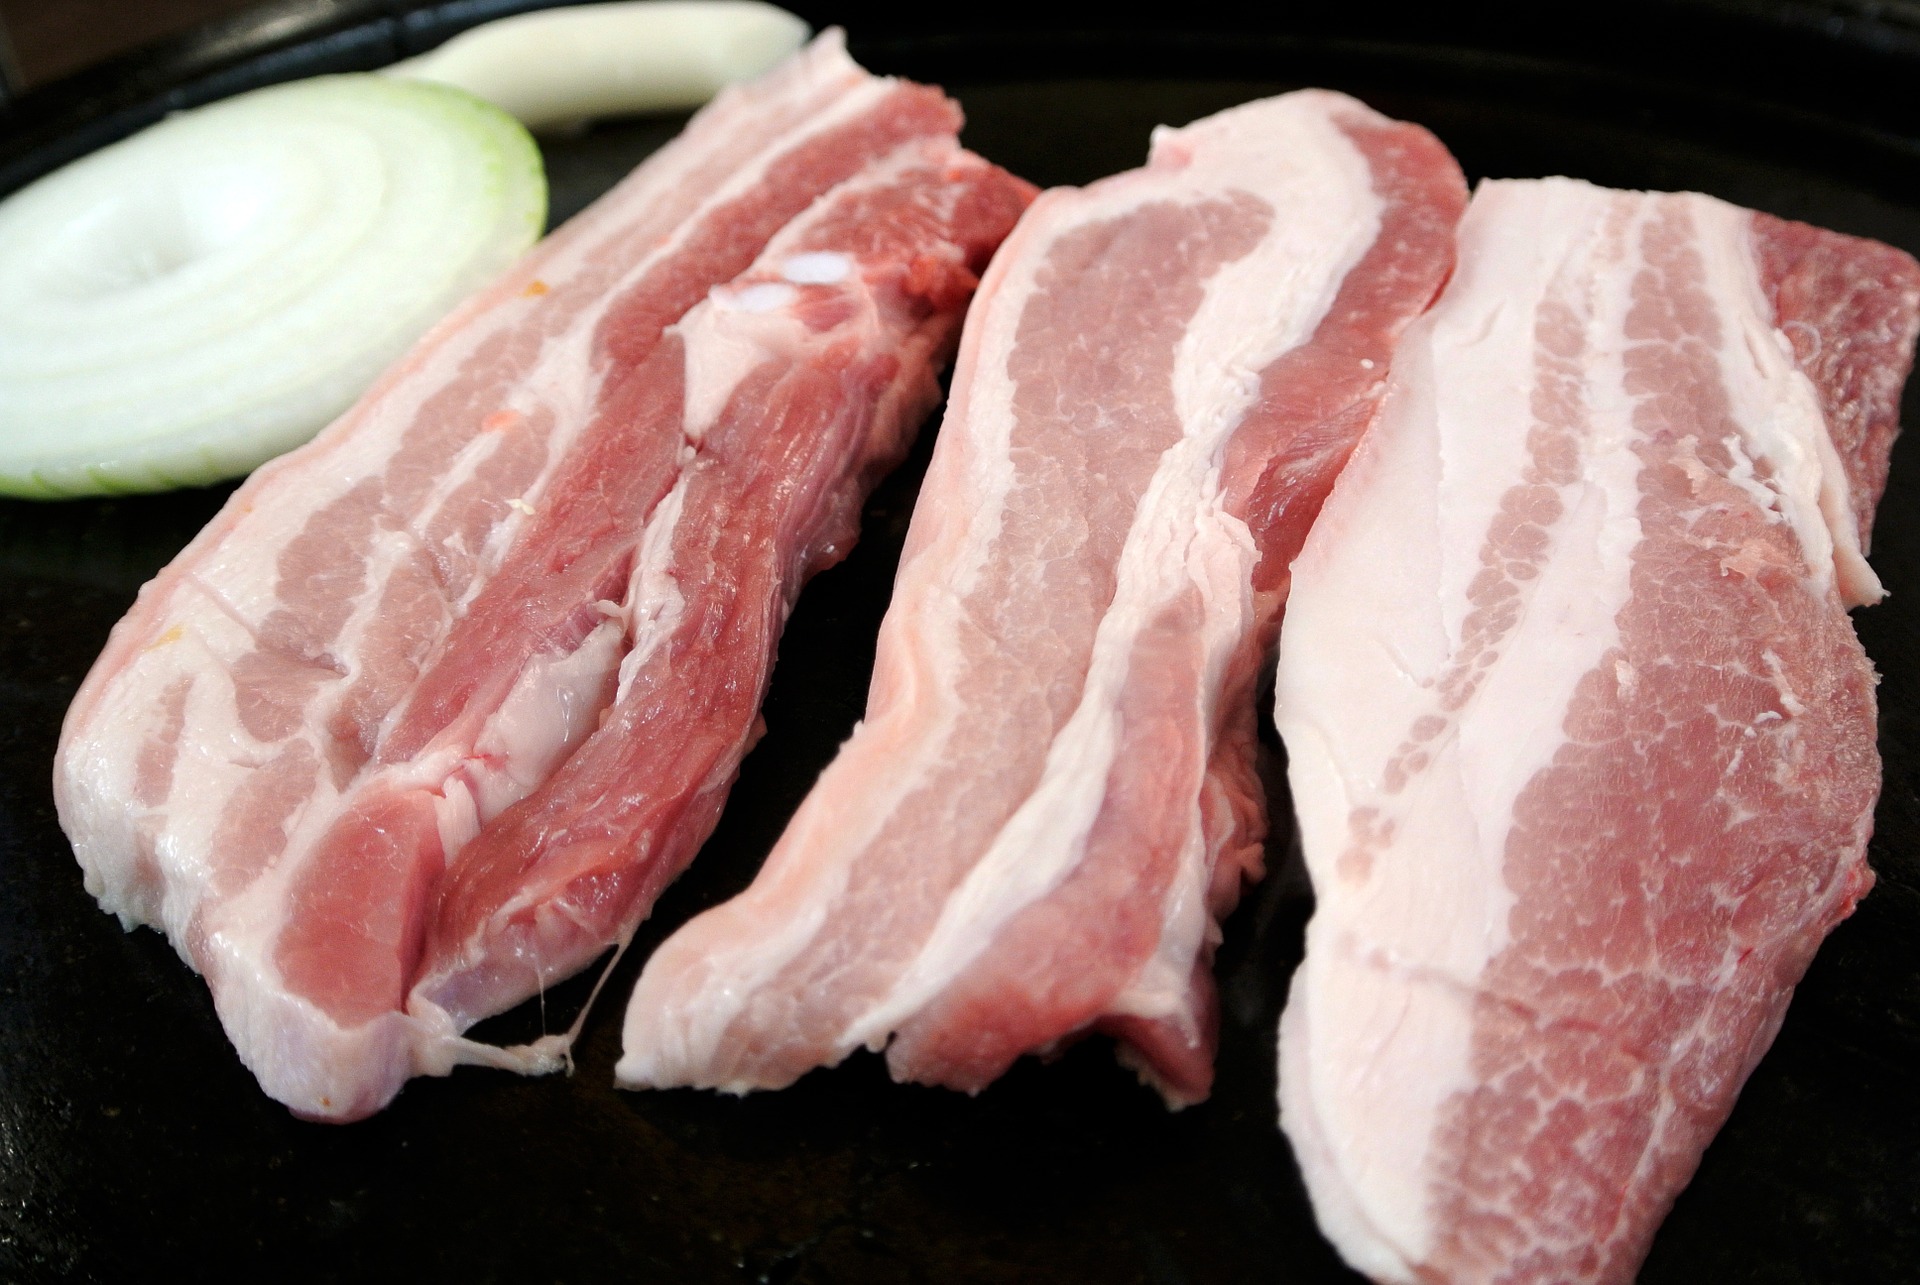 年關將近穩物價 中國再投放4萬噸儲備豬肉 | 芋傳媒 TaroNews